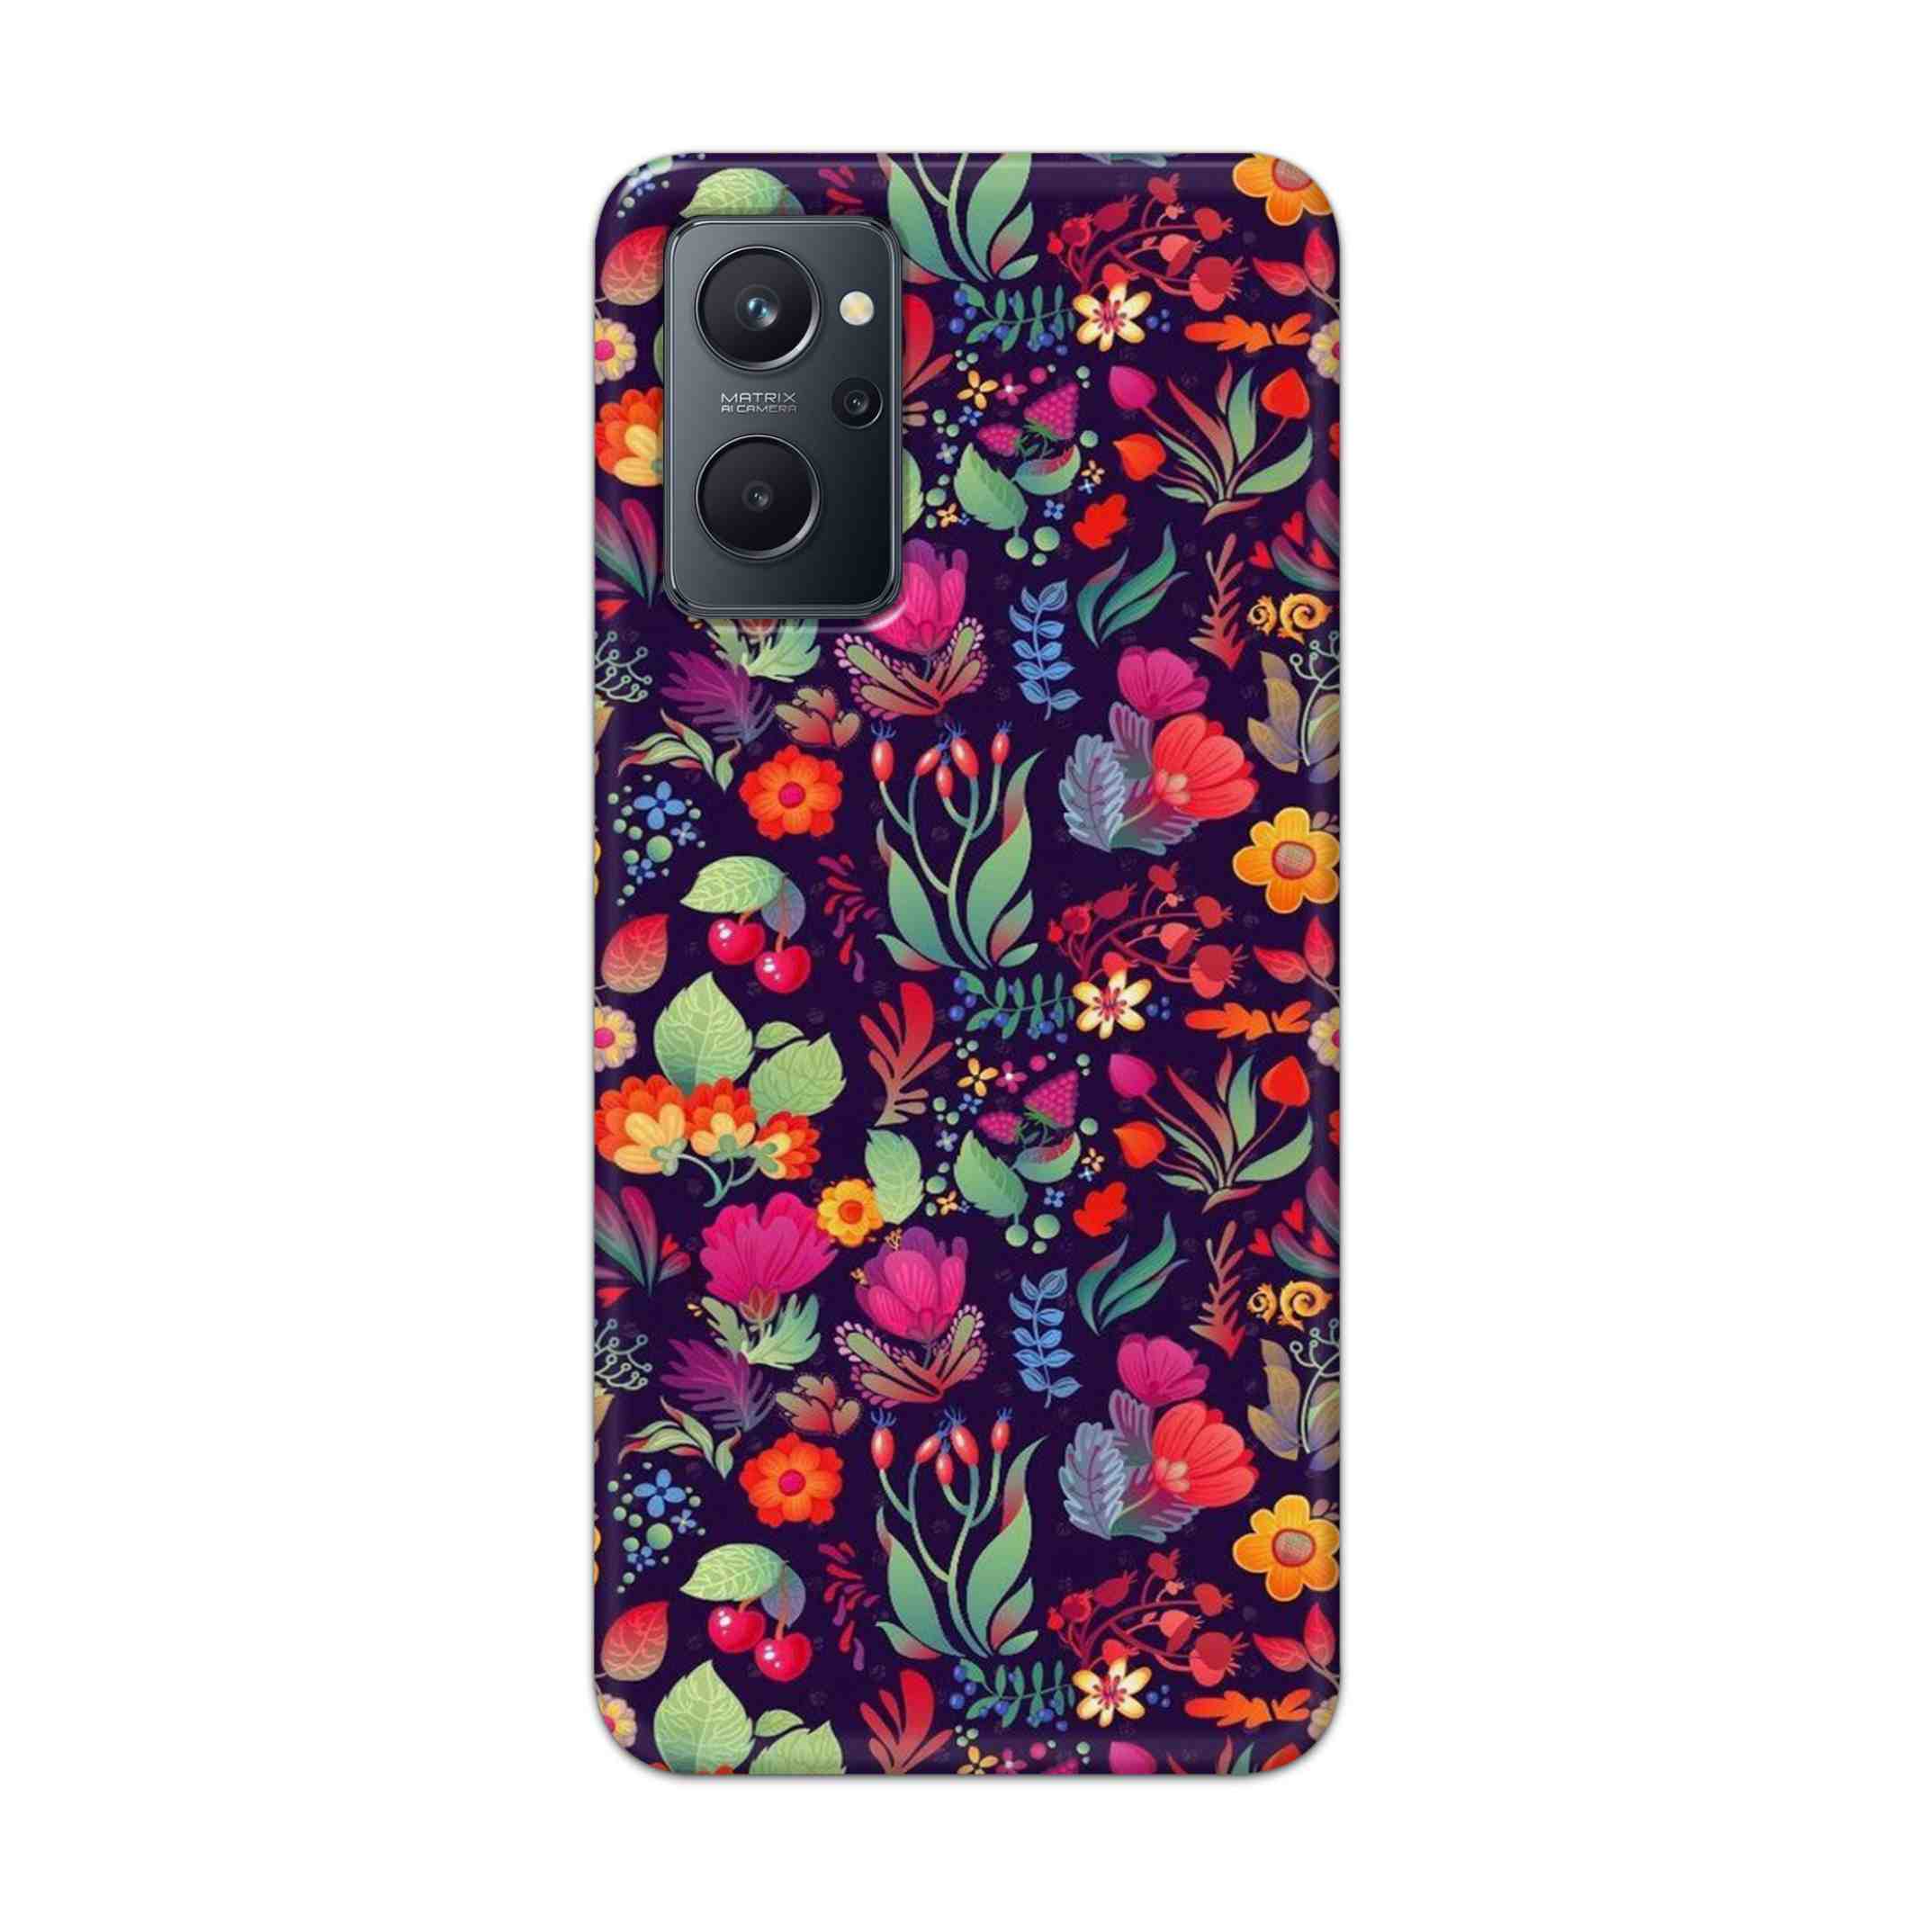 Buy Fruits Flower Hard Back Mobile Phone Case Cover For Realme 9i Online